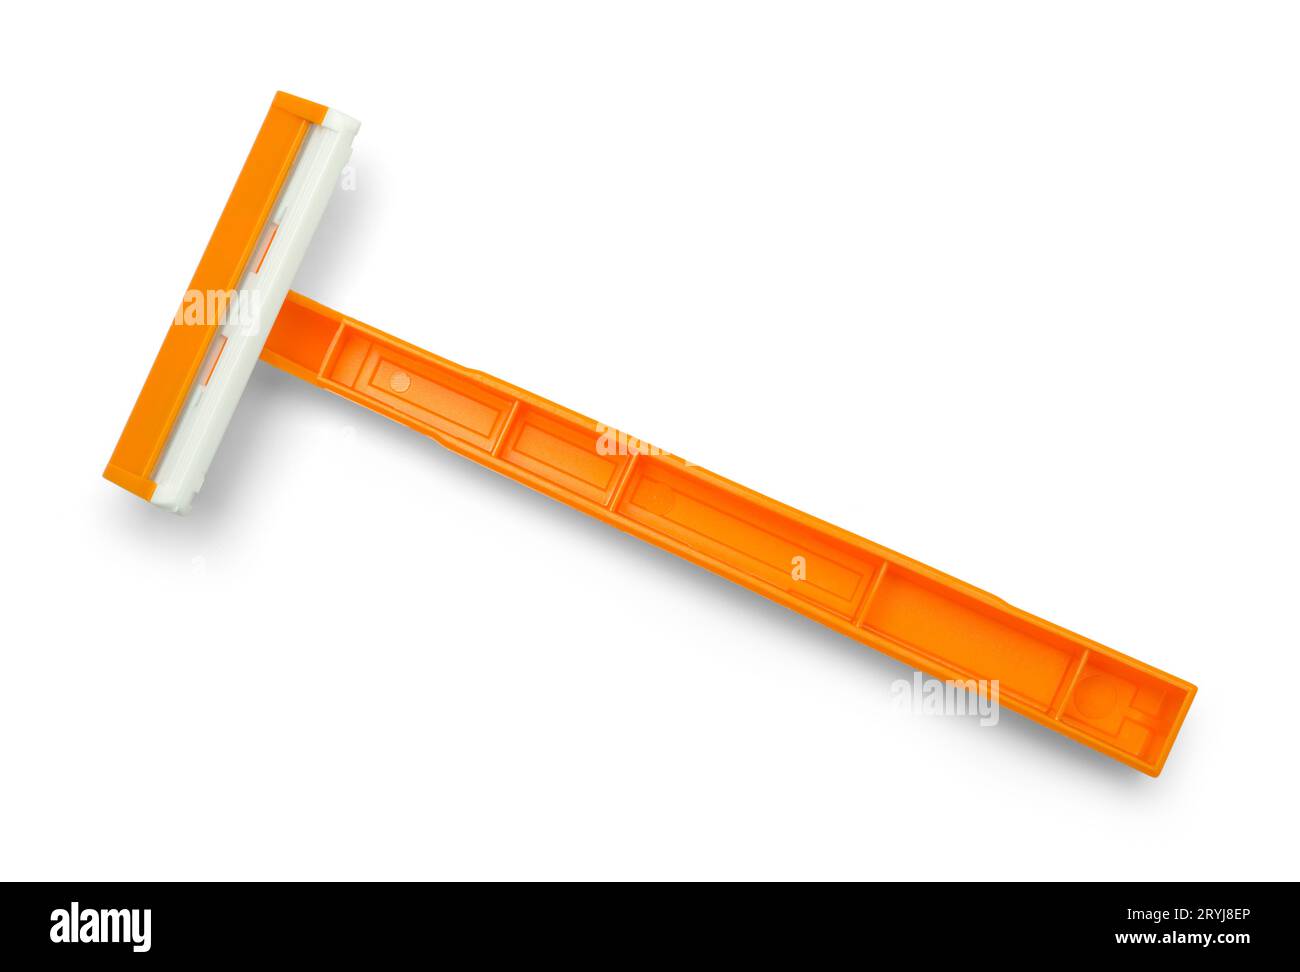 Einweg-Rasierer aus orangefarbenem Kunststoff, ausgeschnitten auf weiß. Stockfoto